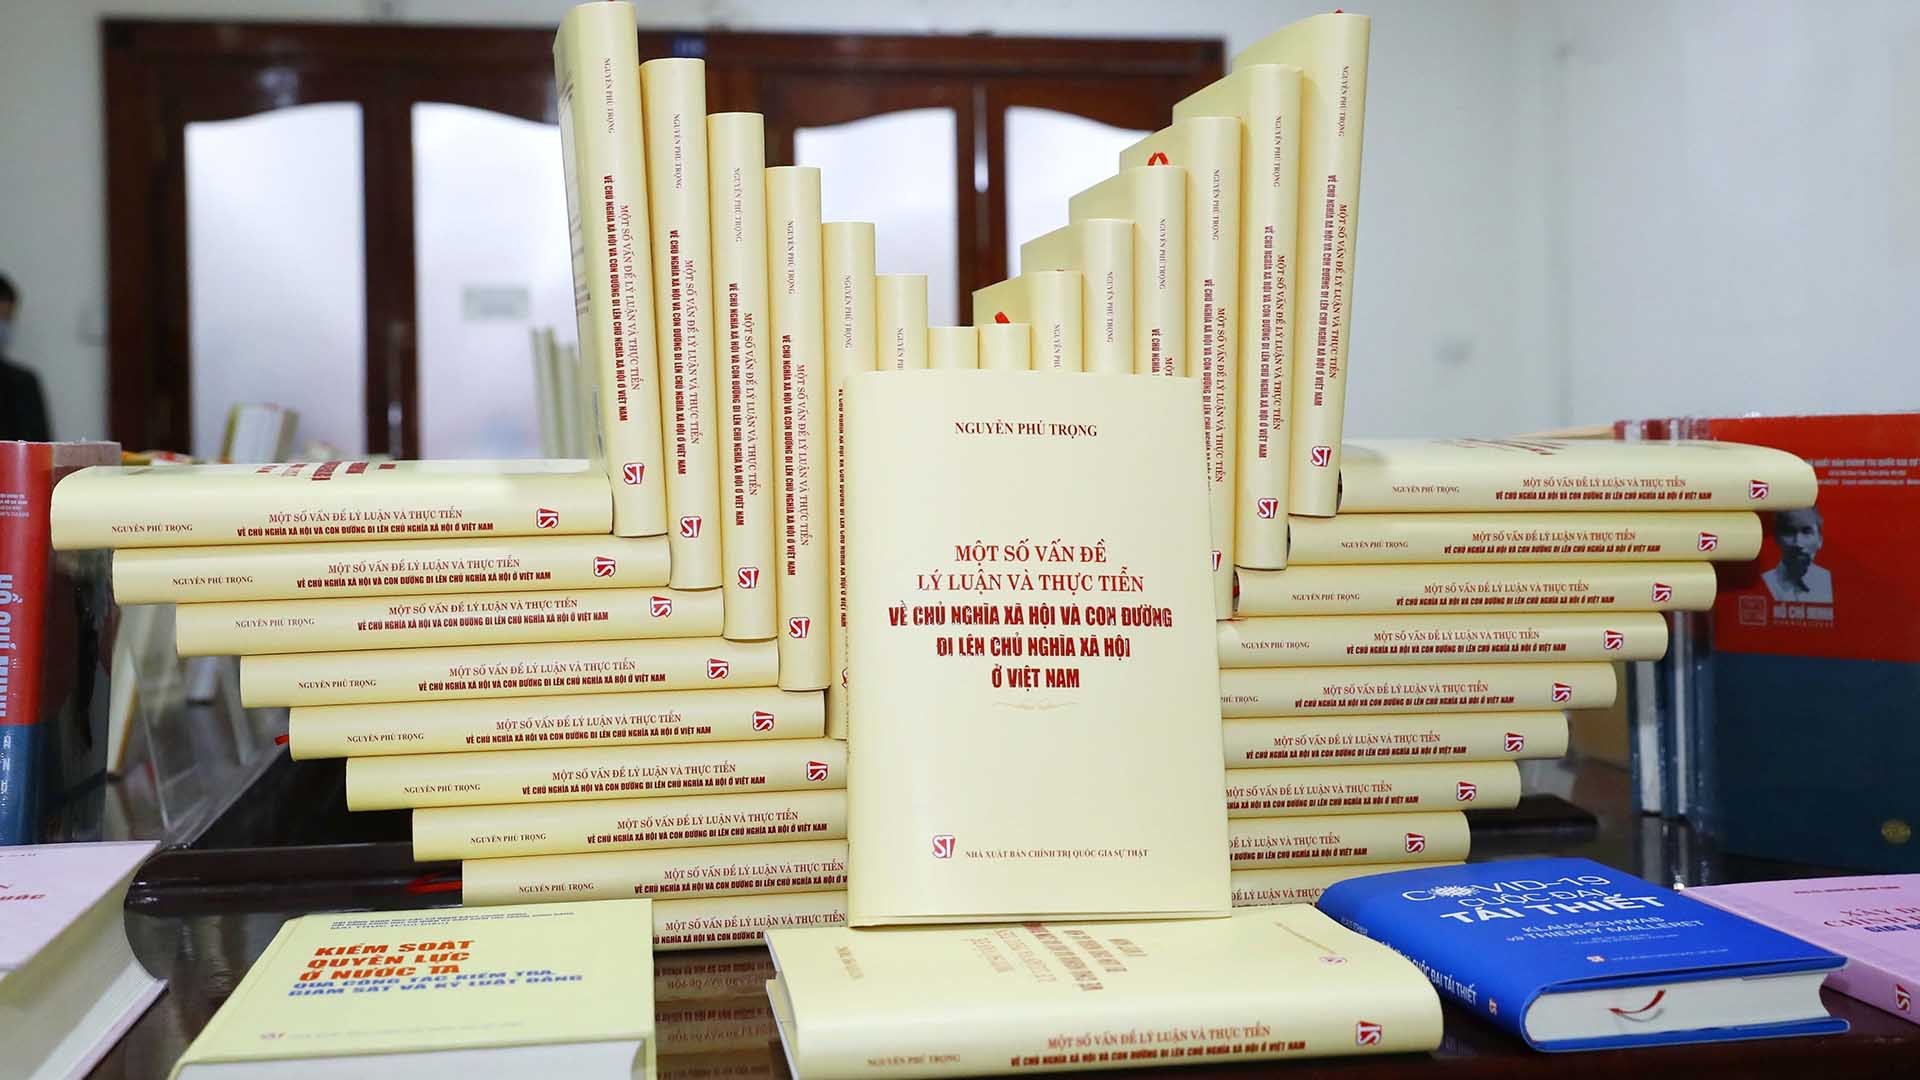 Ra mắt cuốn sách "Một số vấn đề lý luận và thực tiễn về chủ nghĩa xã hội và con đường đi lên chủ nghĩa xã hội ở Việt Nam” của Tổng Bí thư Nguyễn Phú T